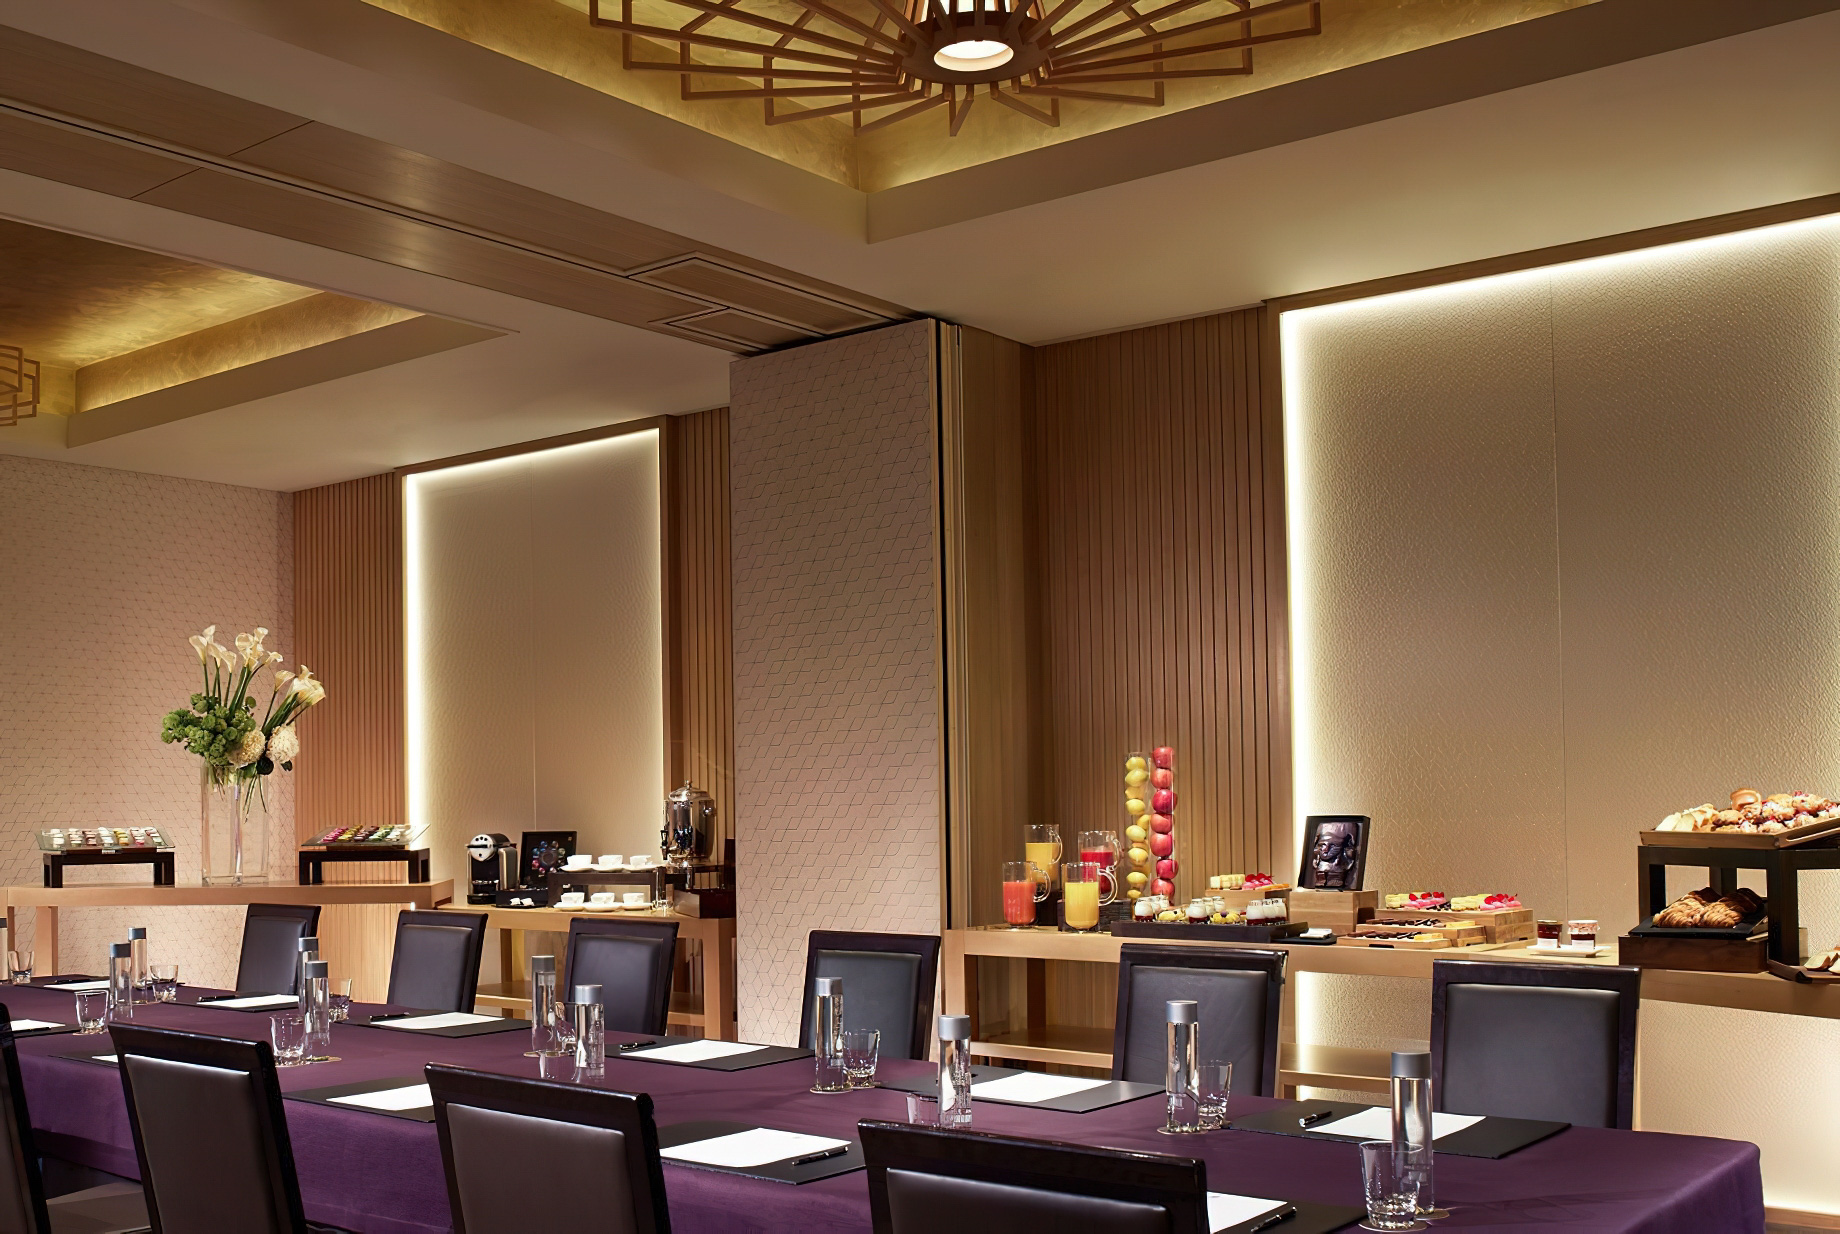 The Ritz-Carlton, Kyoto Hotel – Nakagyo Ward, Kyoto, Japan – Banquet Room Meeting Room Setup